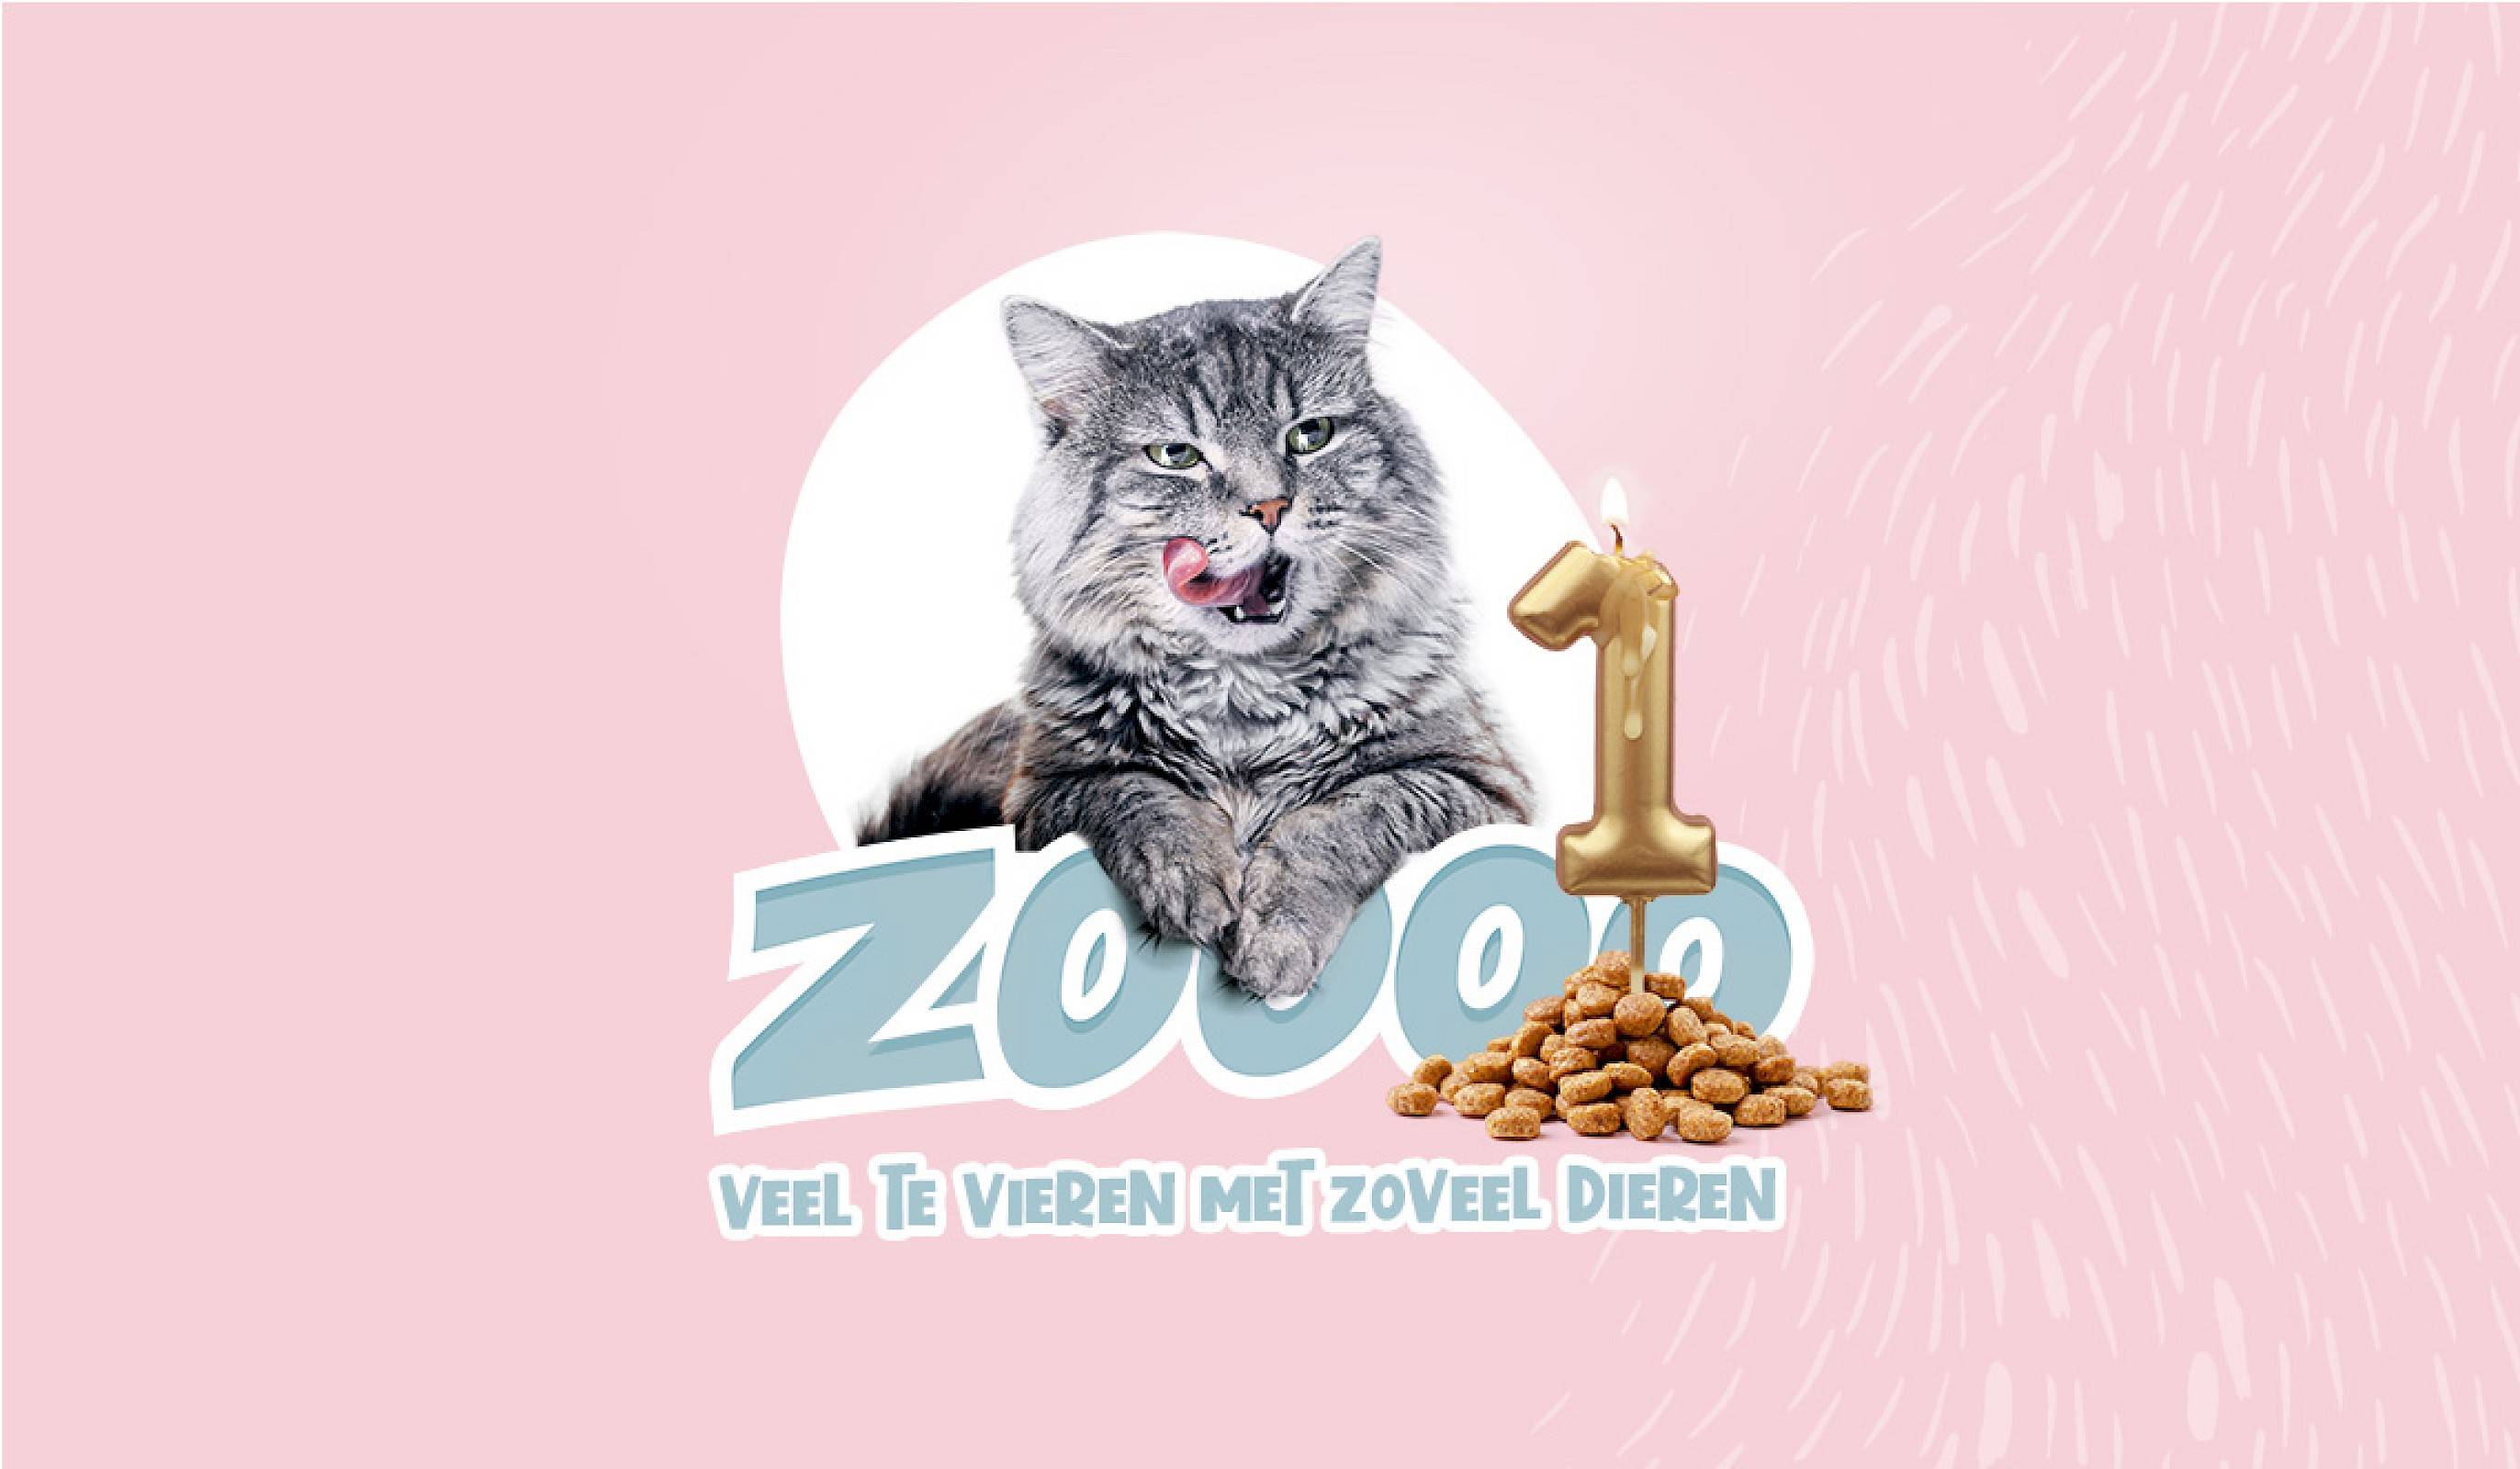 Een kat naast een hoopje kattenbrokken met daarop een kaarsje in de vorm van het cijfer één, onder de kat staat een slogan van Duponzoo: 'zoooo veel te vieren, met zoveel dieren'